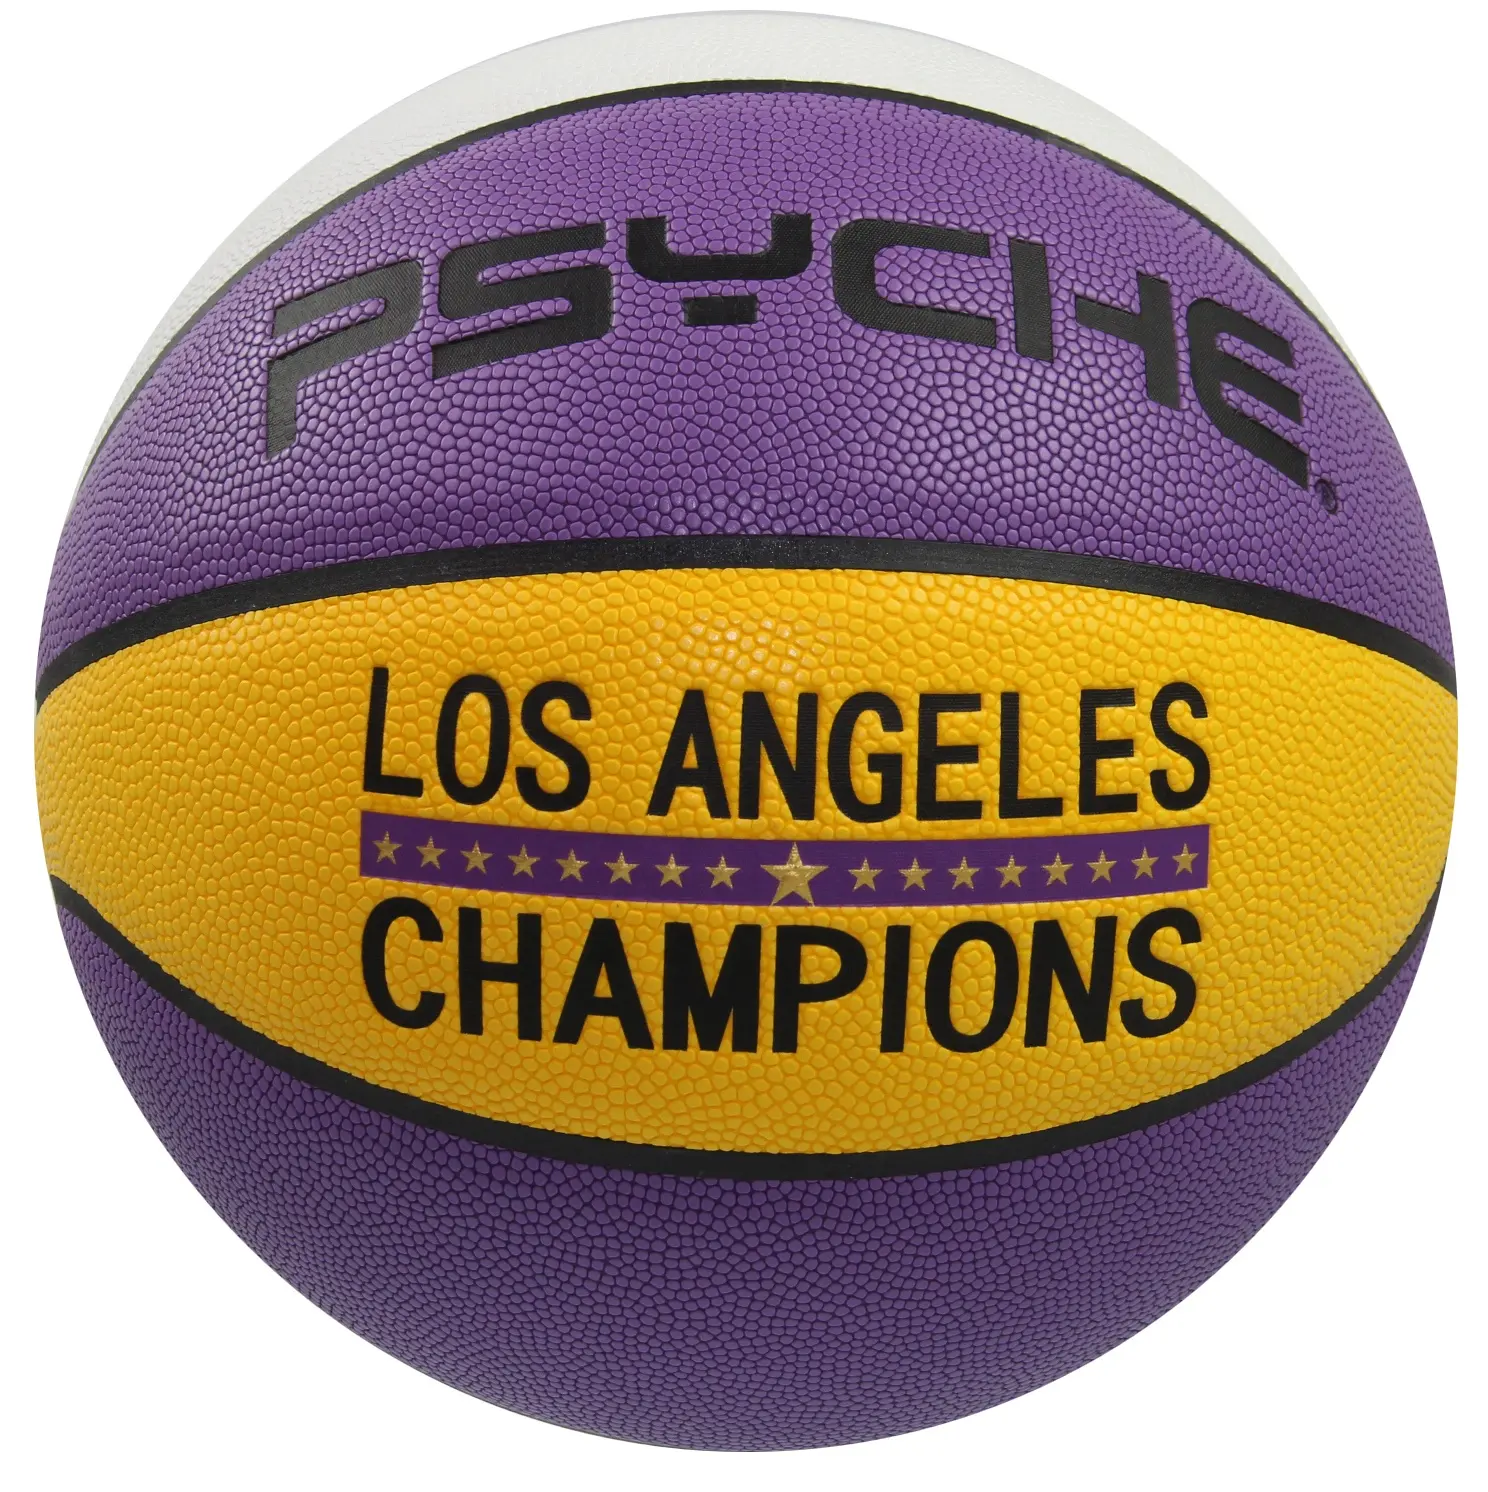 PSYCHE Prix Compétitif Lakers Hygroscopique PU Taille Officielle 29.5 Basketball Intérieur Extérieur Pour L'entraînement